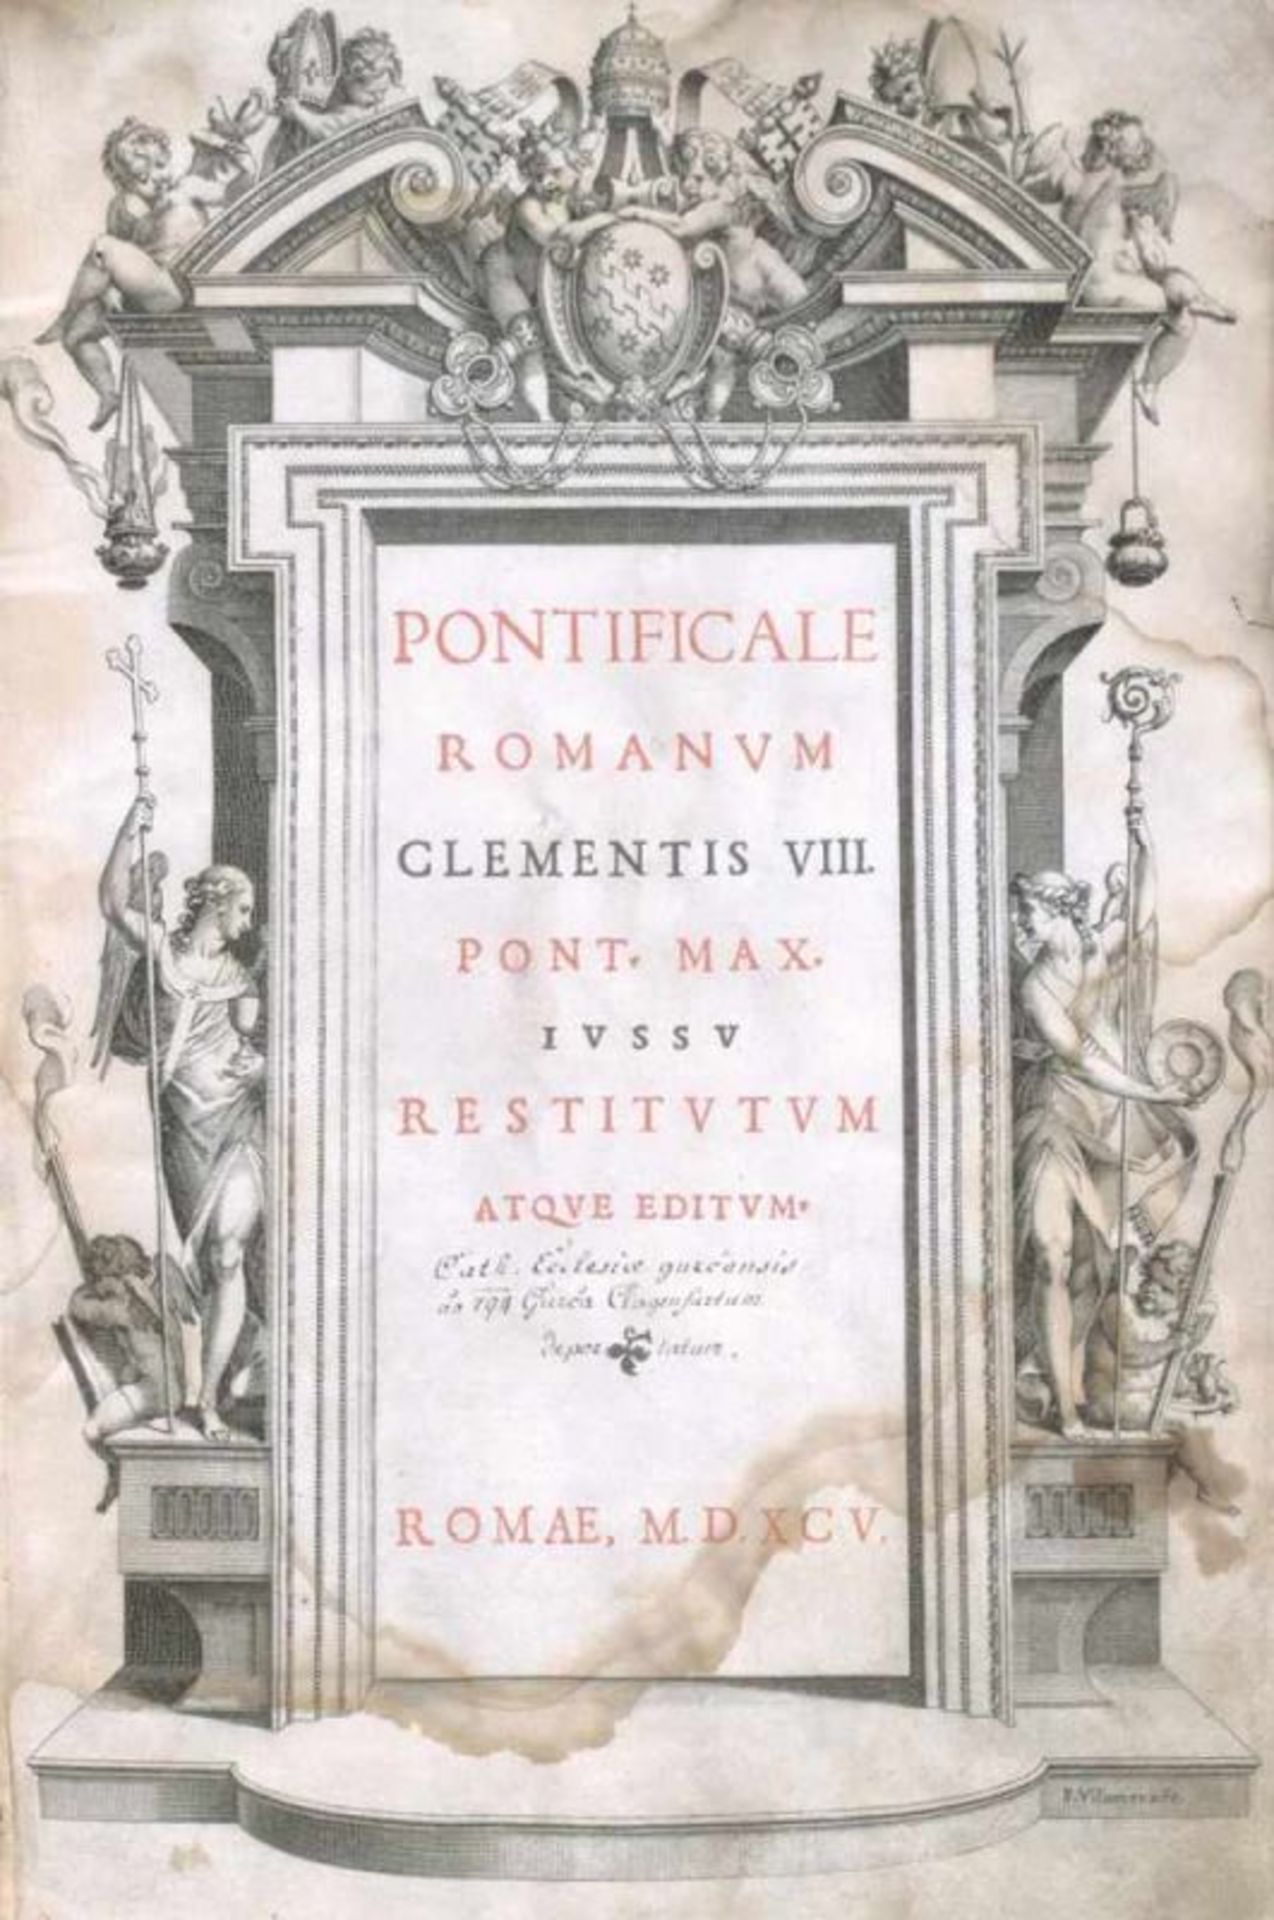 Clemens VIII. Papst. Pontificale Romanum Clementis VIII. Pont. Max. jussu restitutum atque editum. 3